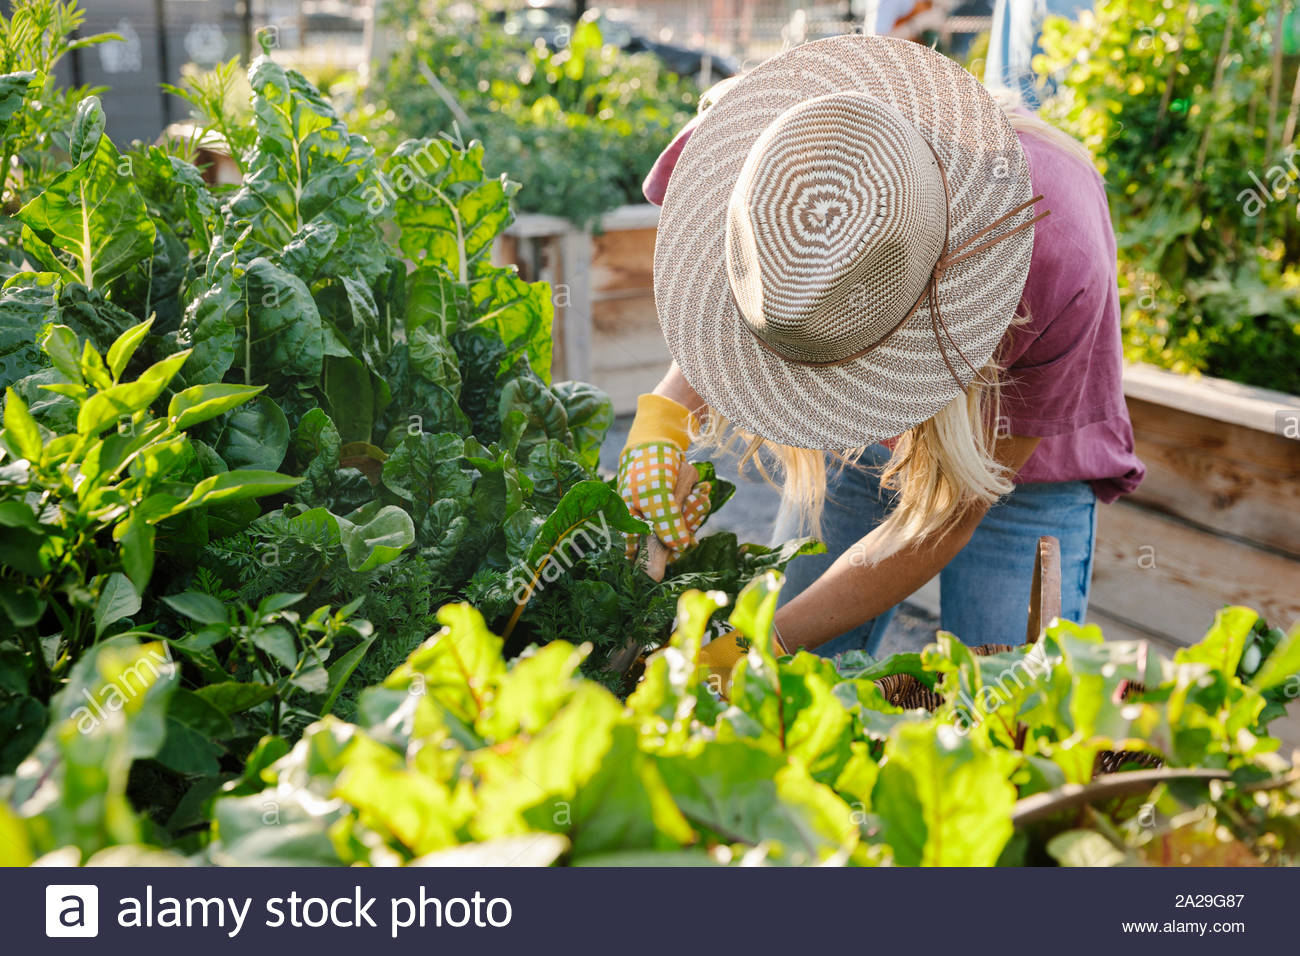 Jeune Femme au chapeau de soleil qui tend à les plantes de jardin communautaire Banque D'Images